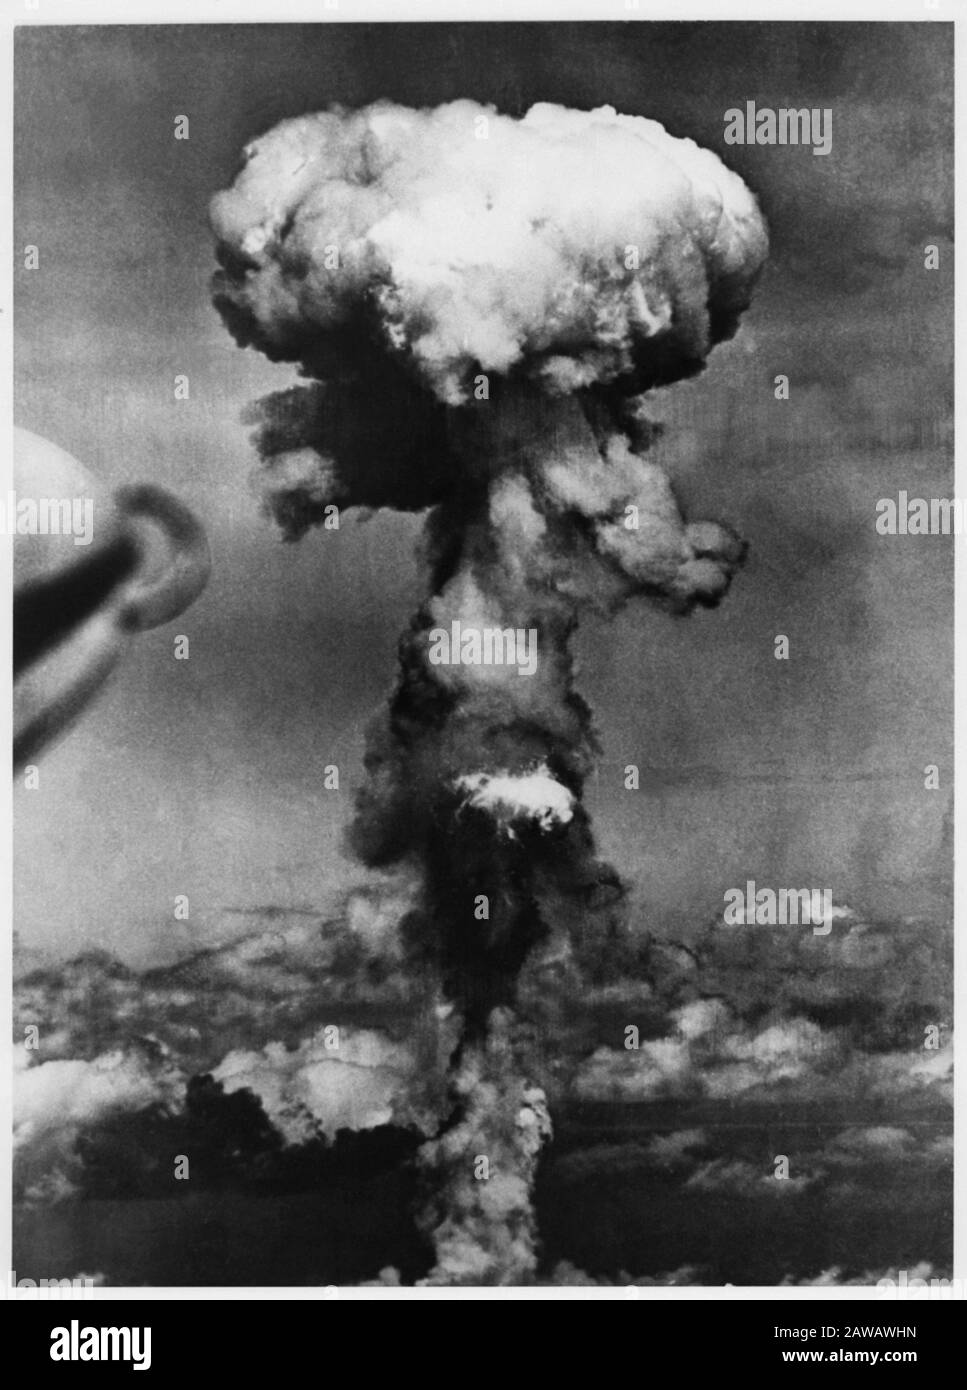 August 1945, 6. august, JAPAN: Die United States Army Air Forces (USAAF) warfen um 8:15 Uhr eine ATOMBOMBE auf HIROSHIMA, JAPAN, nahe dem Ende der Welt ab Stockfoto